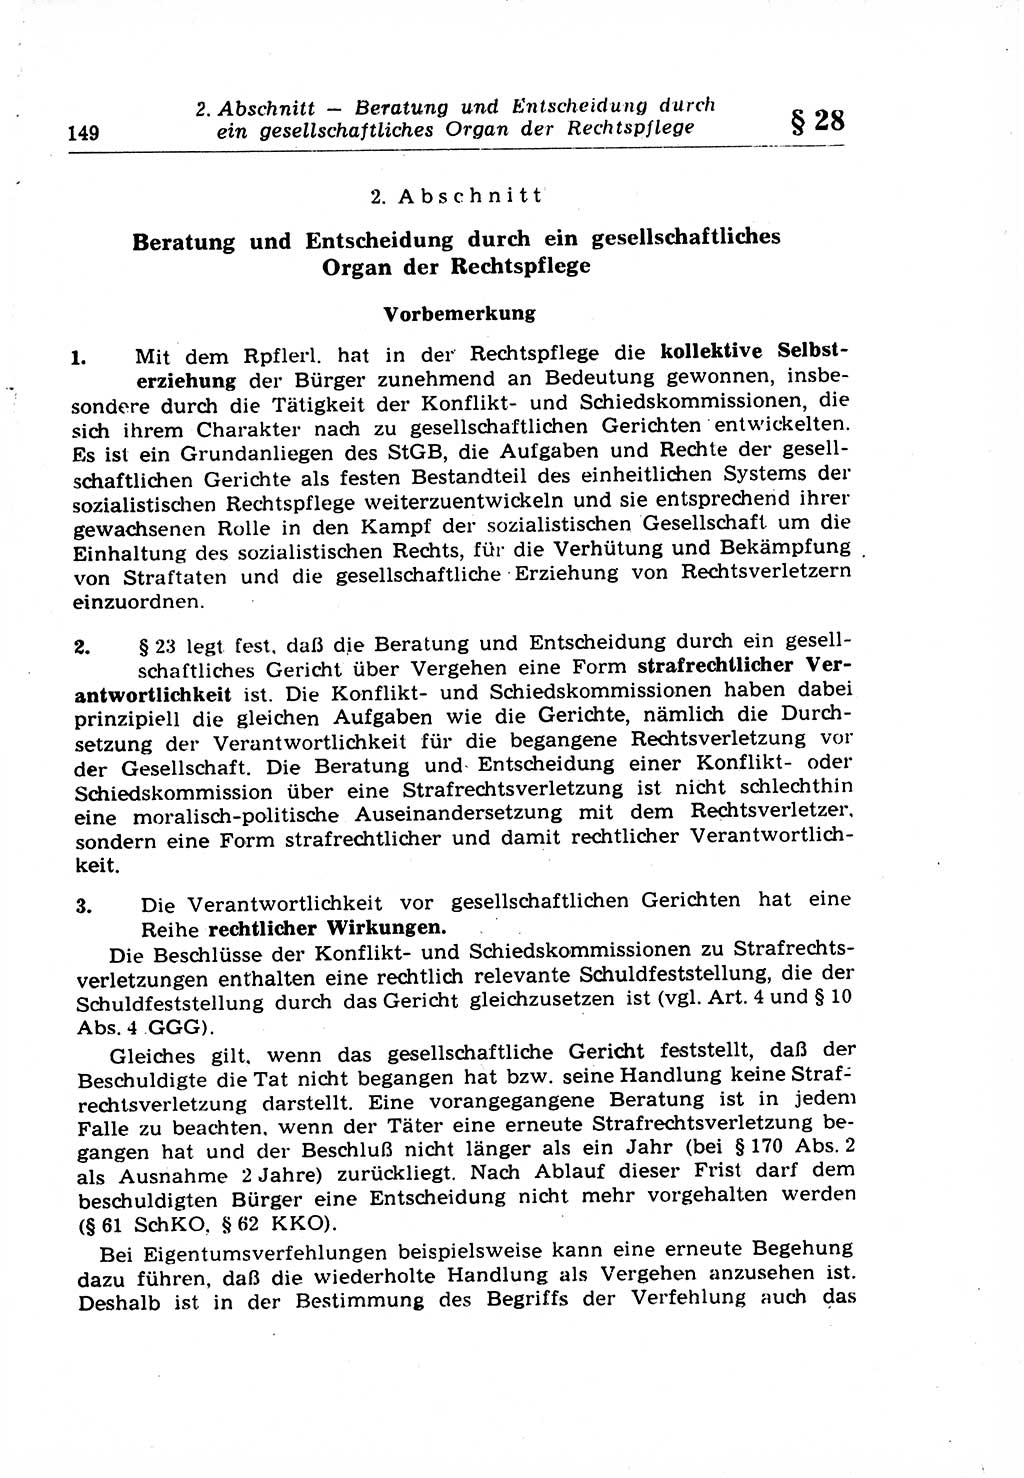 Strafrecht der Deutschen Demokratischen Republik (DDR), Lehrkommentar zum Strafgesetzbuch (StGB), Allgemeiner Teil 1969, Seite 149 (Strafr. DDR Lehrkomm. StGB AT 1969, S. 149)